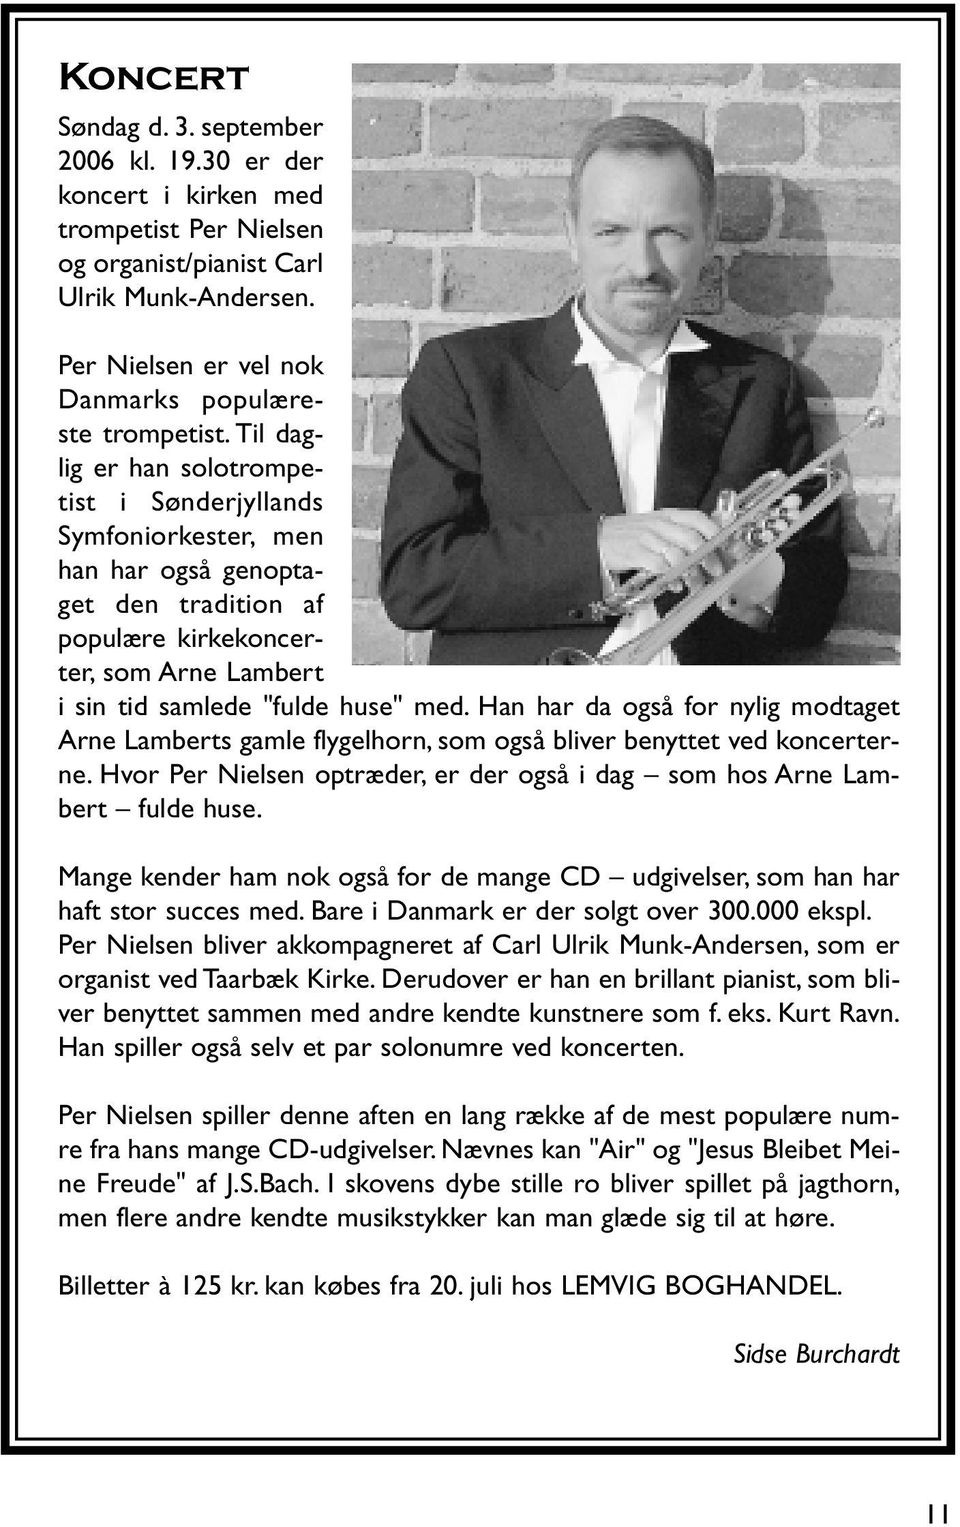 Han har da også for nylig modtaget Arne Lamberts gamle flygelhorn, som også bliver benyttet ved koncerterne. Hvor Per Nielsen optræder, er der også i dag som hos Arne Lambert fulde huse.